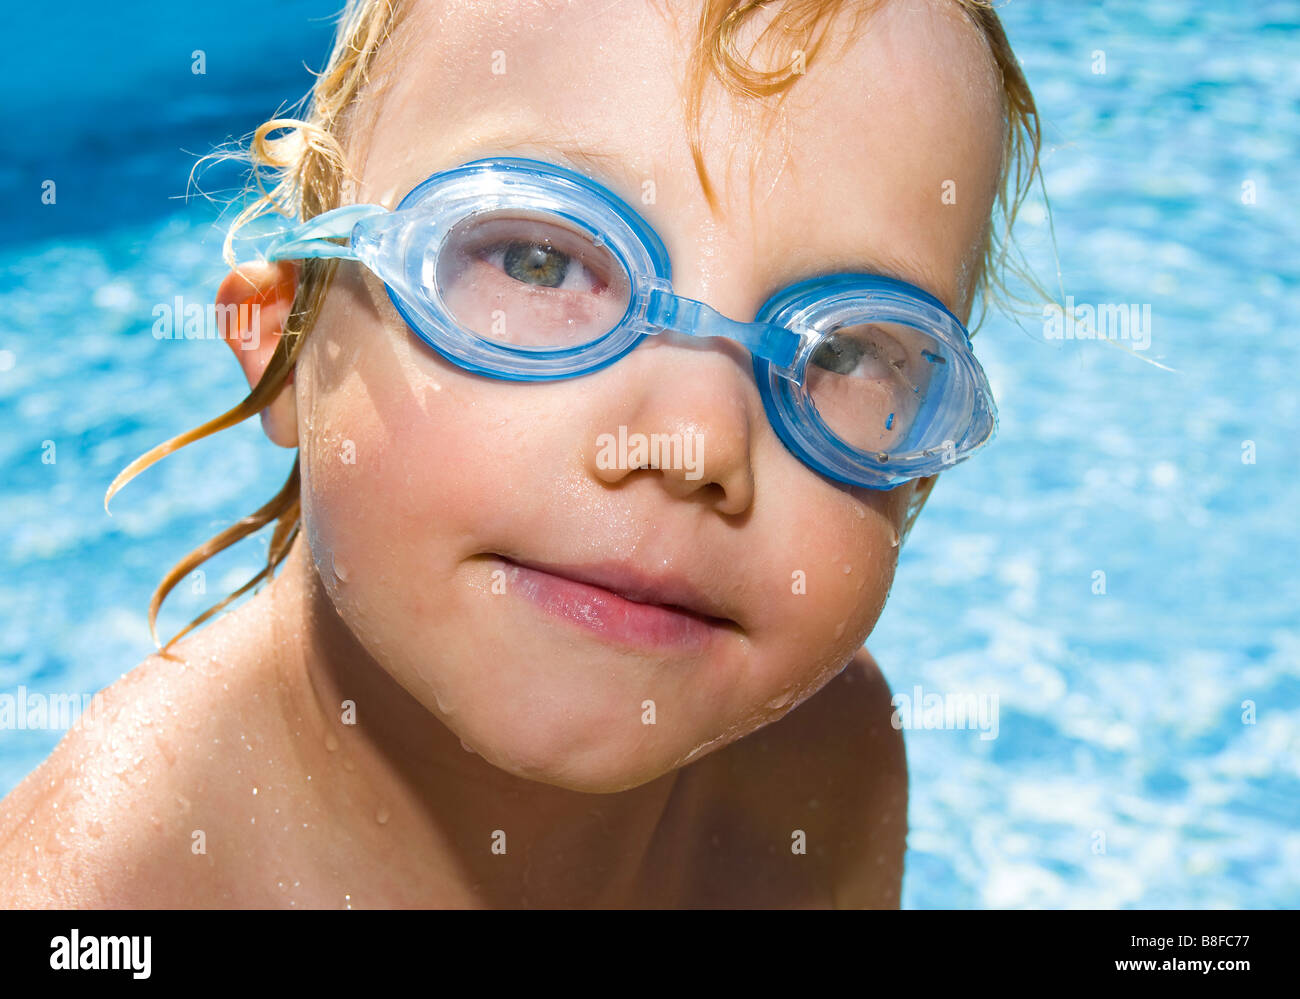 Kleinen Jungen schwimmen tragen Brille auf einen Pool, Porträt  Stockfotografie - Alamy